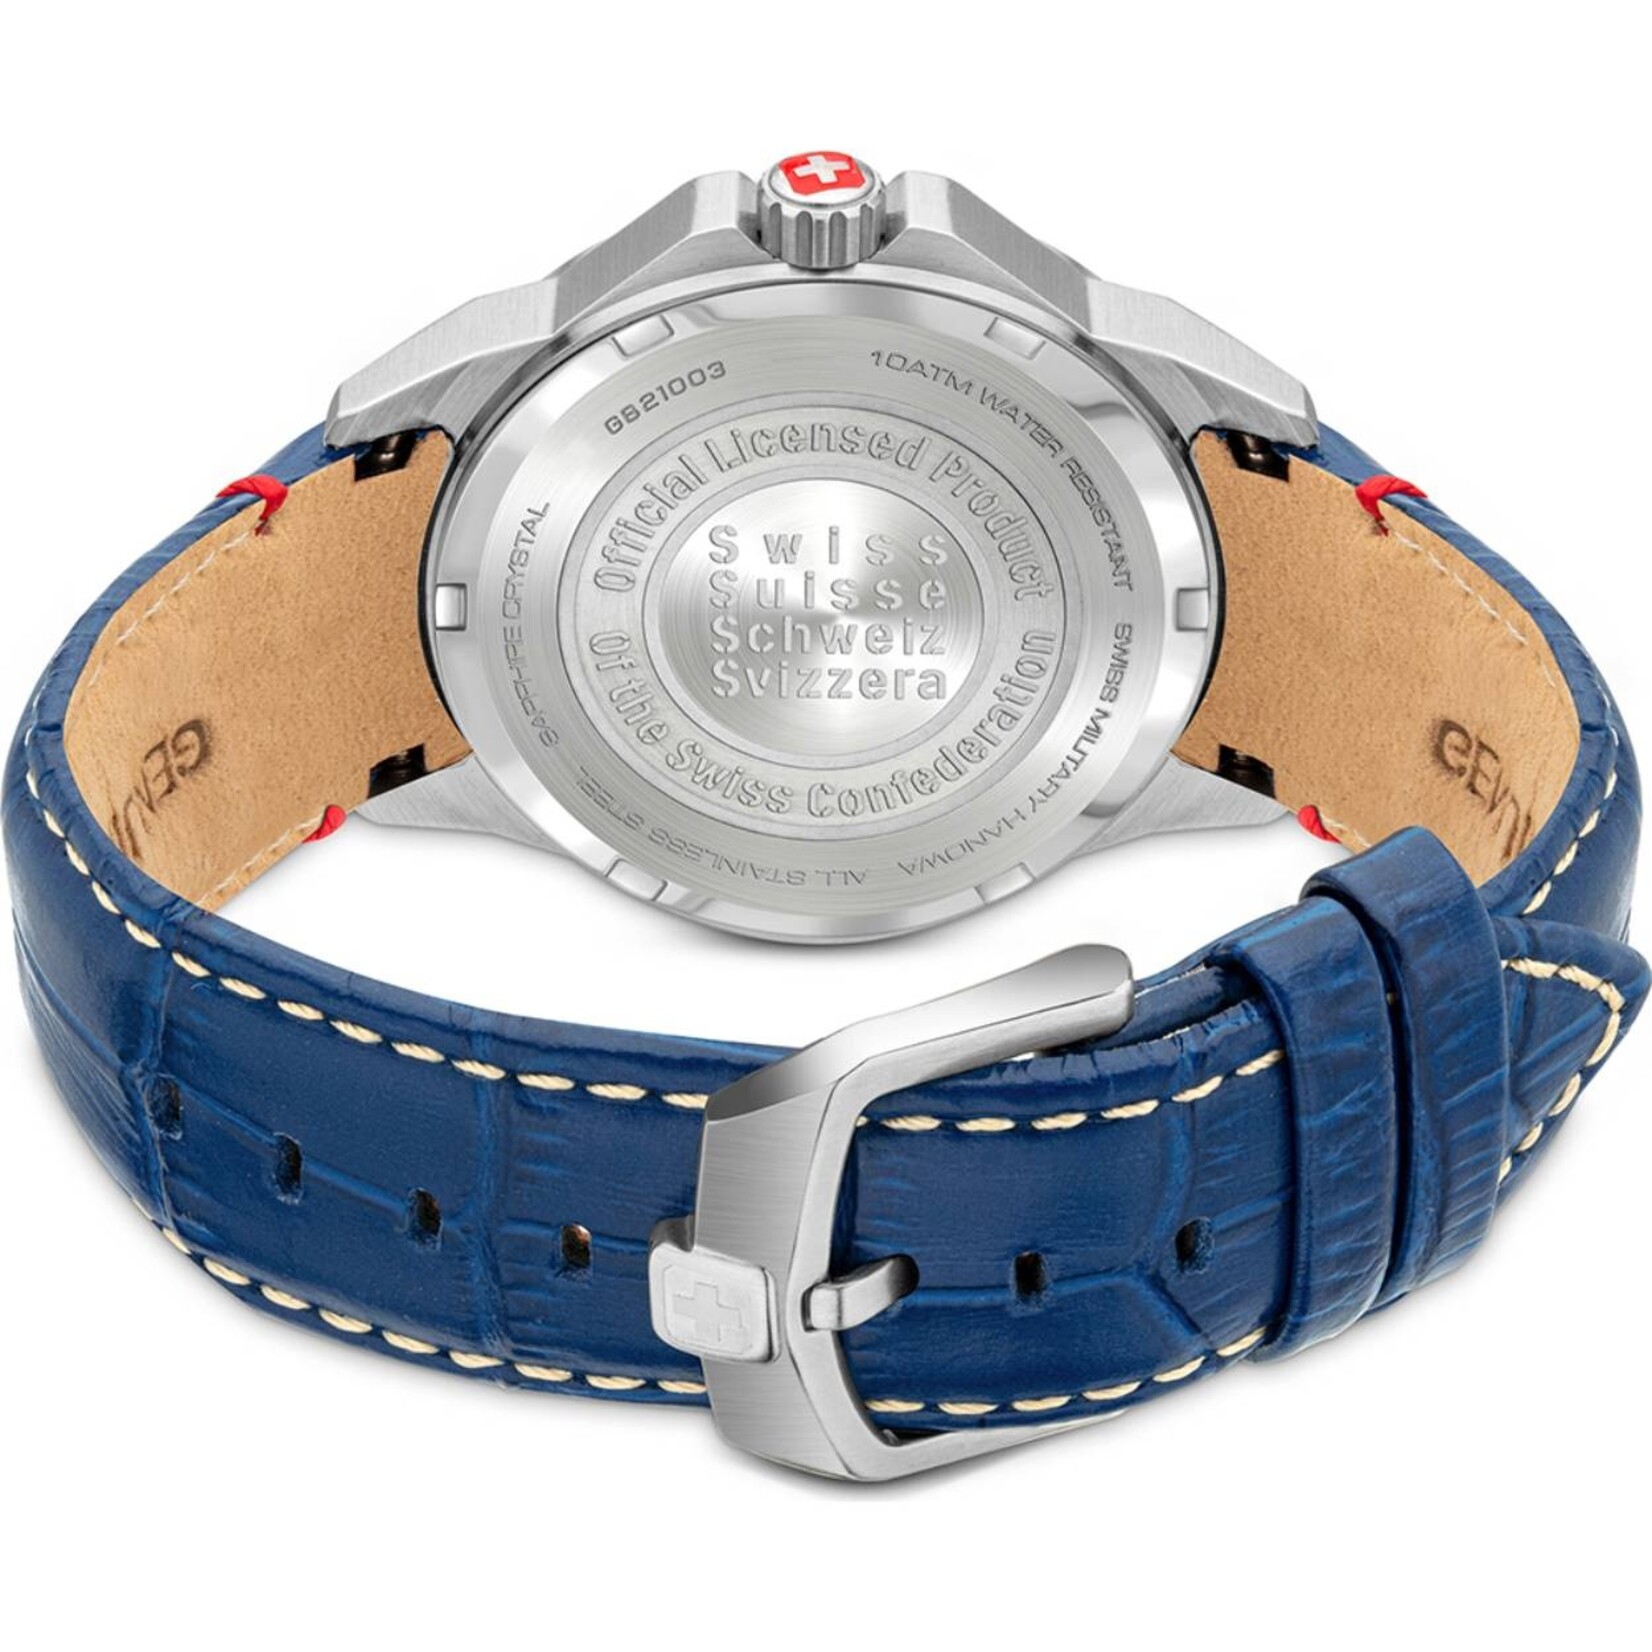 Swiss Military Hanowa Swiss Military Hanowa horloge heren smh-smwgb2100301